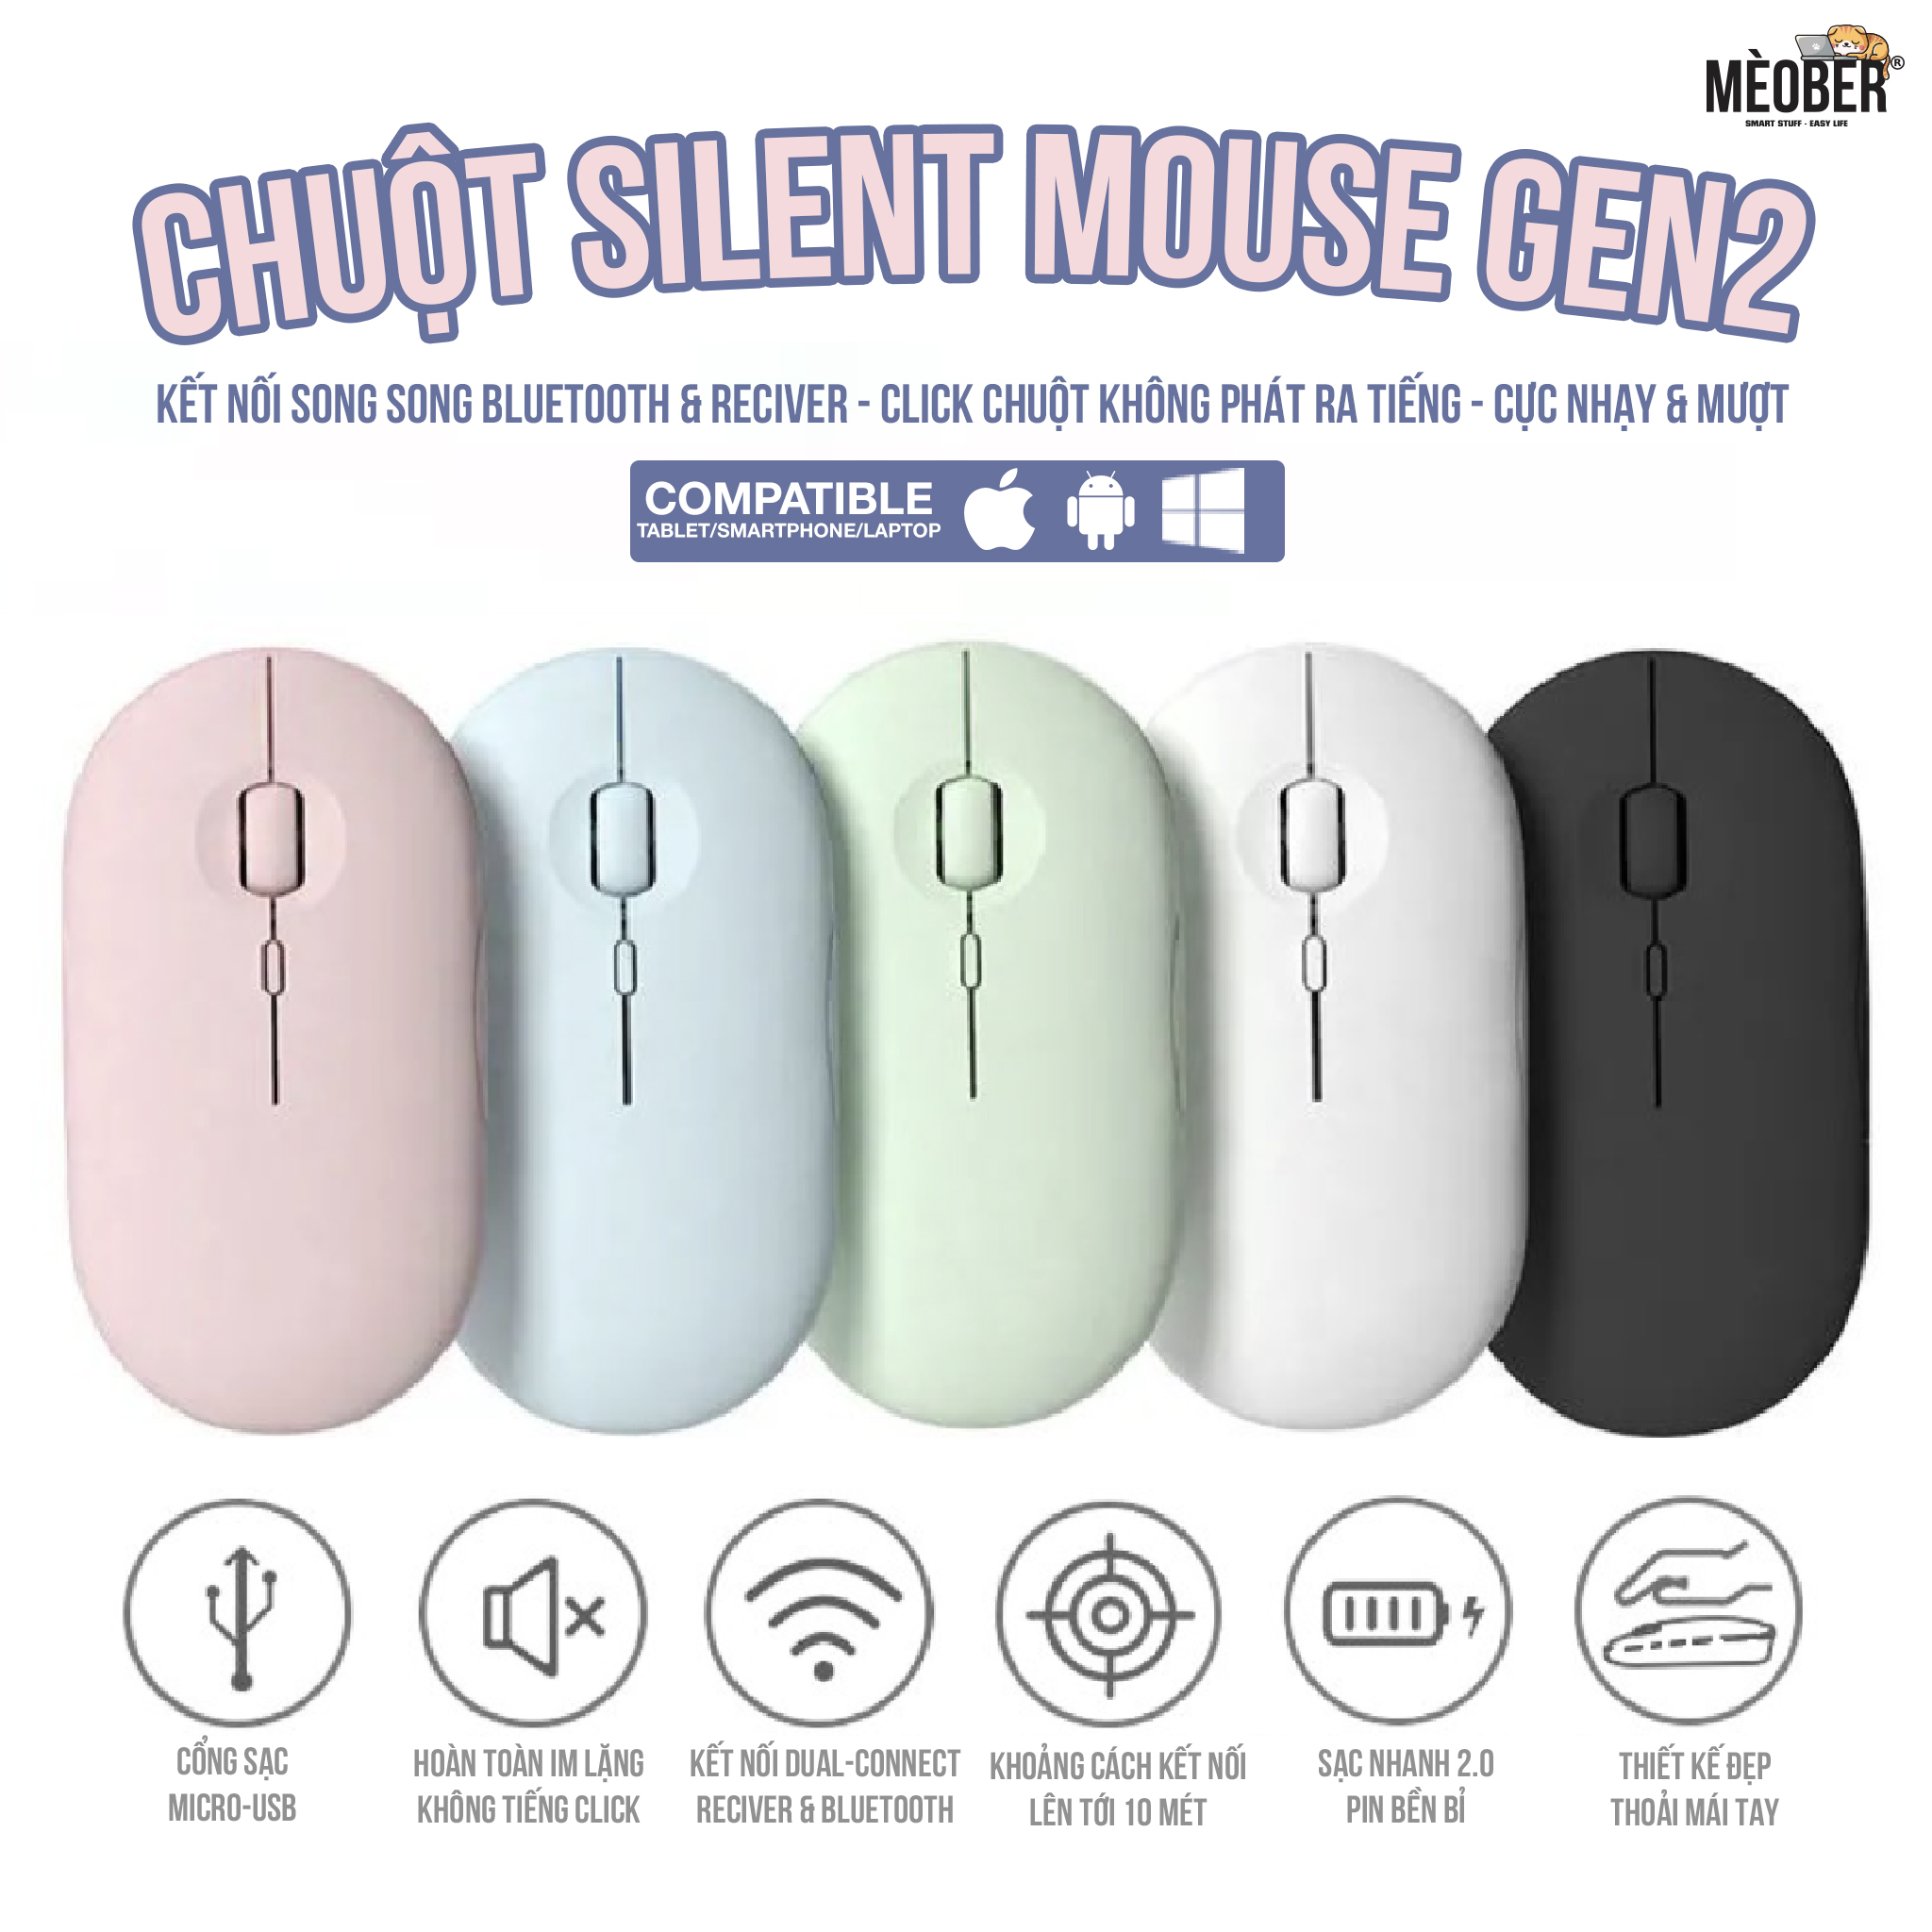 Chuột không dây Bluetooth Silent Mouse Gen2 - Nhỏ Gọn, Tối Giản, Pin Sạc Cao cấp (Black/White/Pink/Mint/Blue)